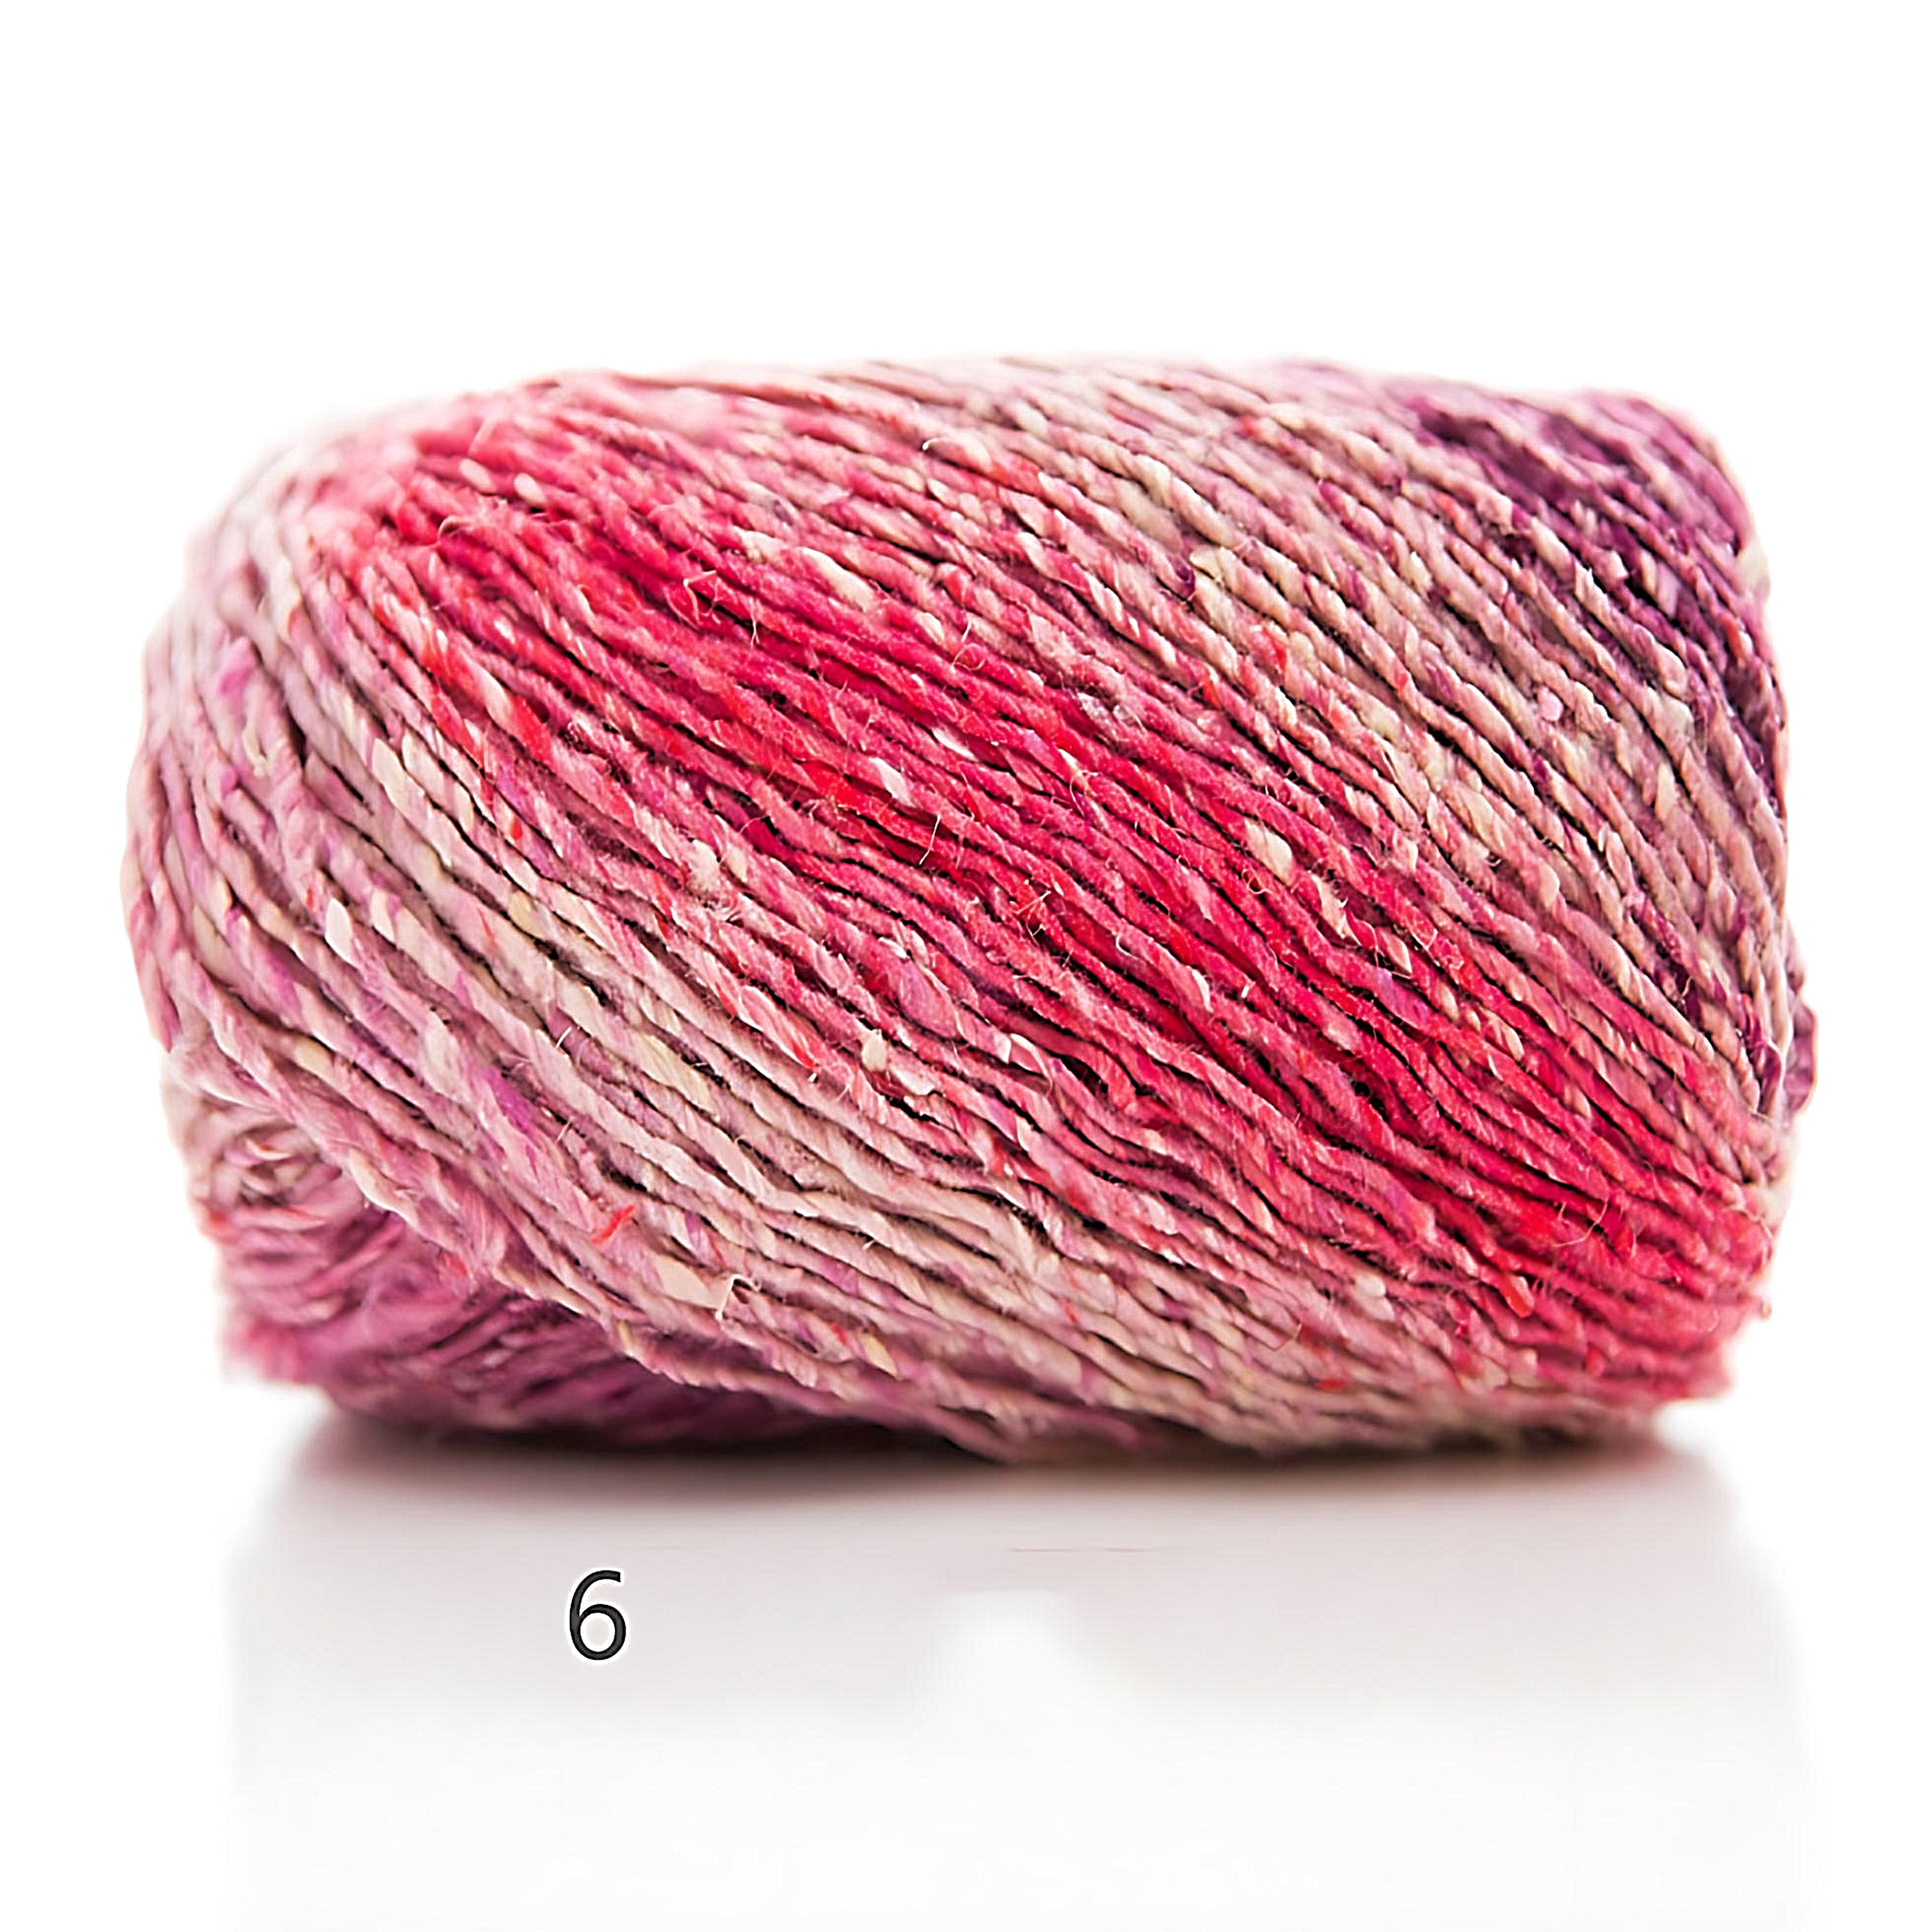  YarnFamily Fur Yarn,Gradient Color Cotton Gradient